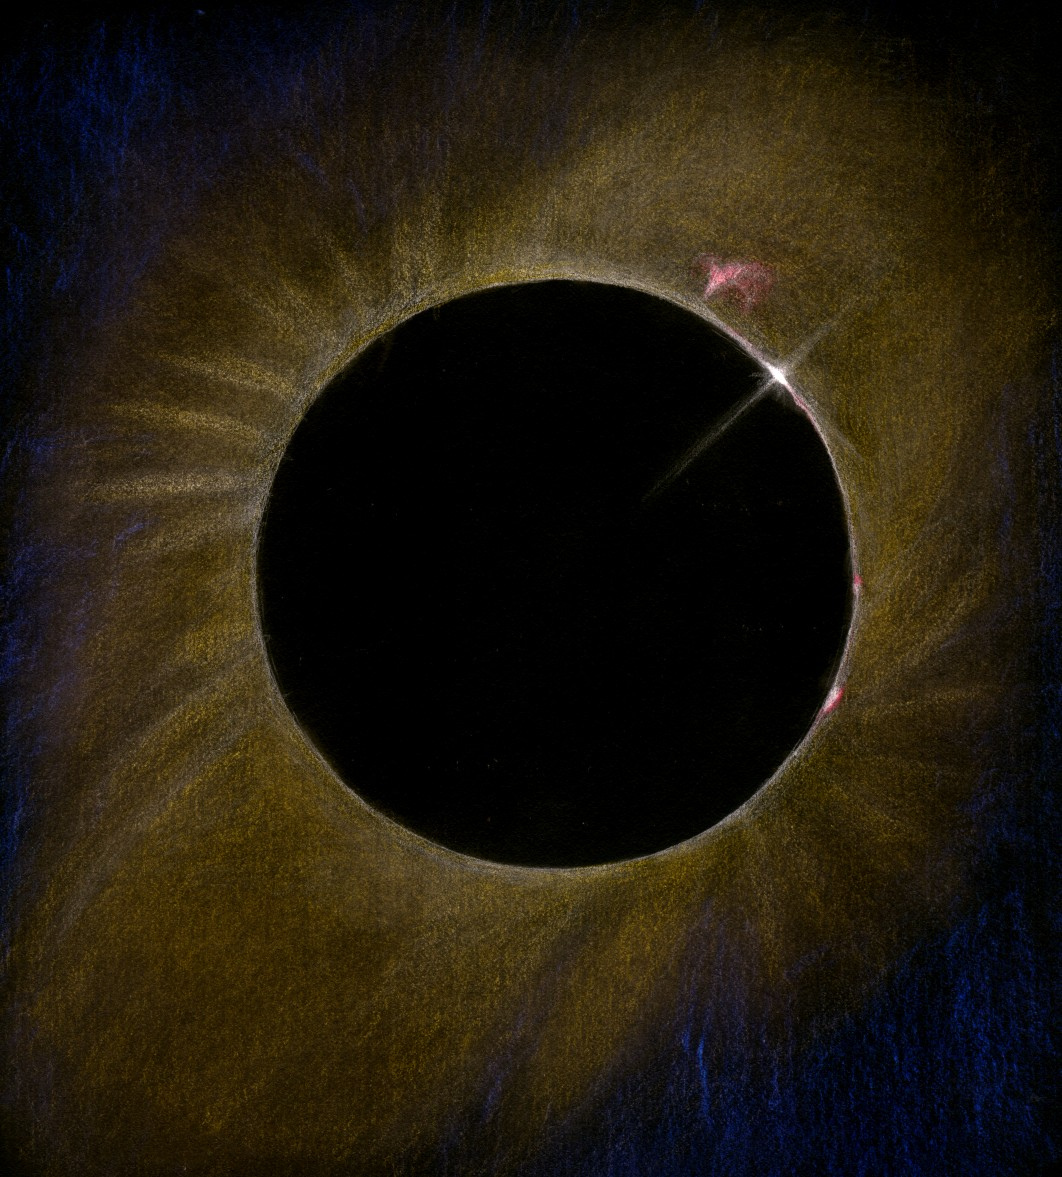 eclipse-soleil-t203x40-02072019.jpg.6a78251f5fcfb347893c98fdf9067d23.jpg